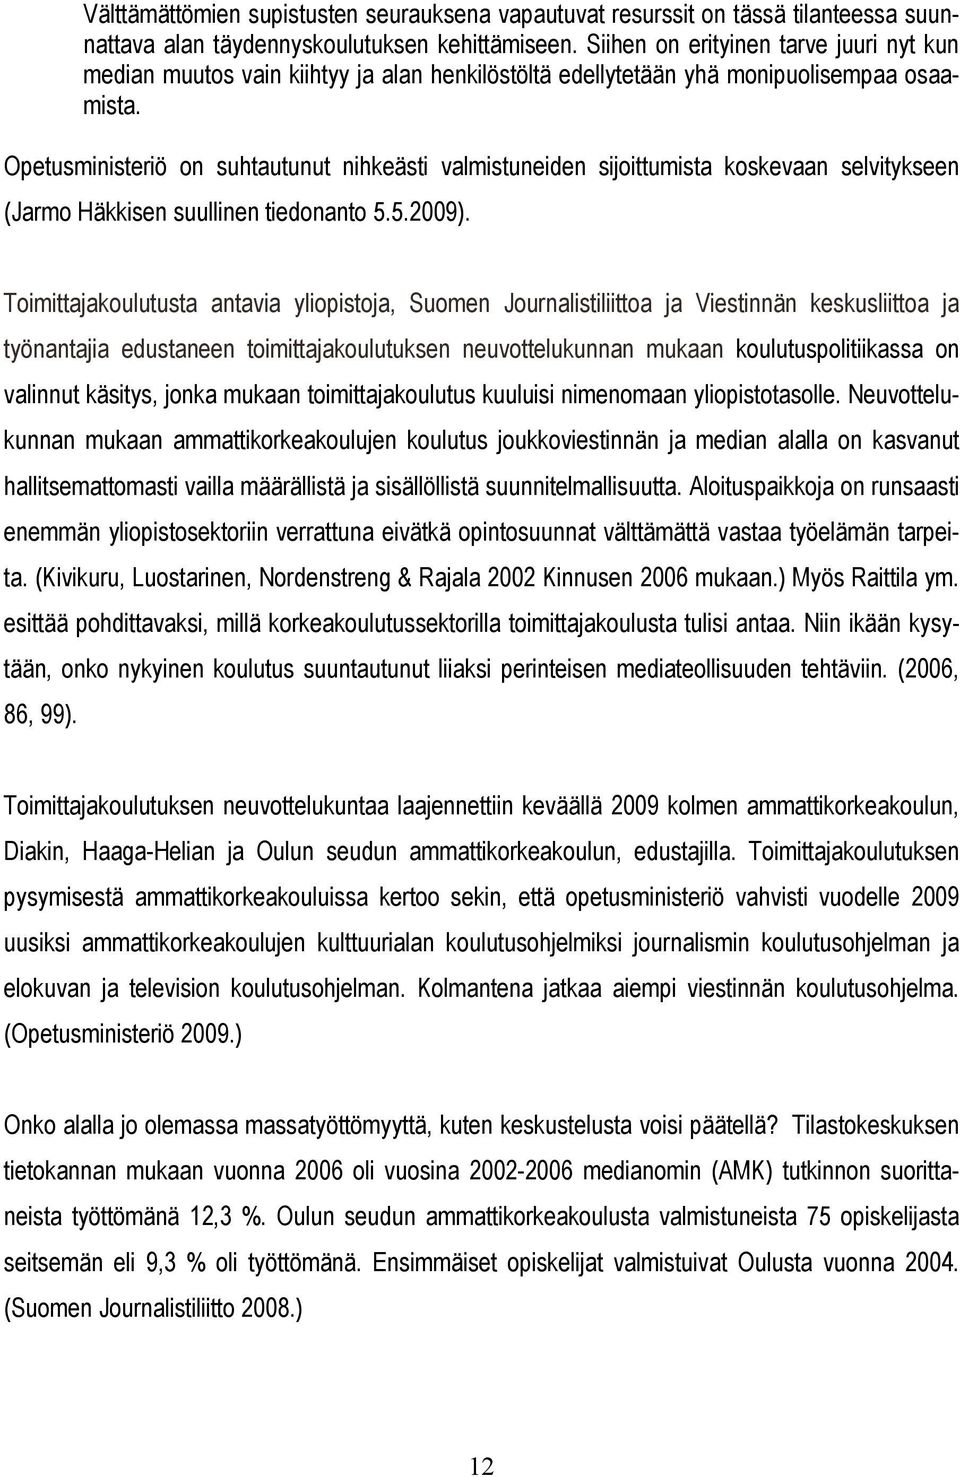 Opetusministeriö on suhtautunut nihkeästi valmistuneiden sijoittumista koskevaan selvitykseen (Jarmo Häkkisen suullinen tiedonanto 5.5.2009).